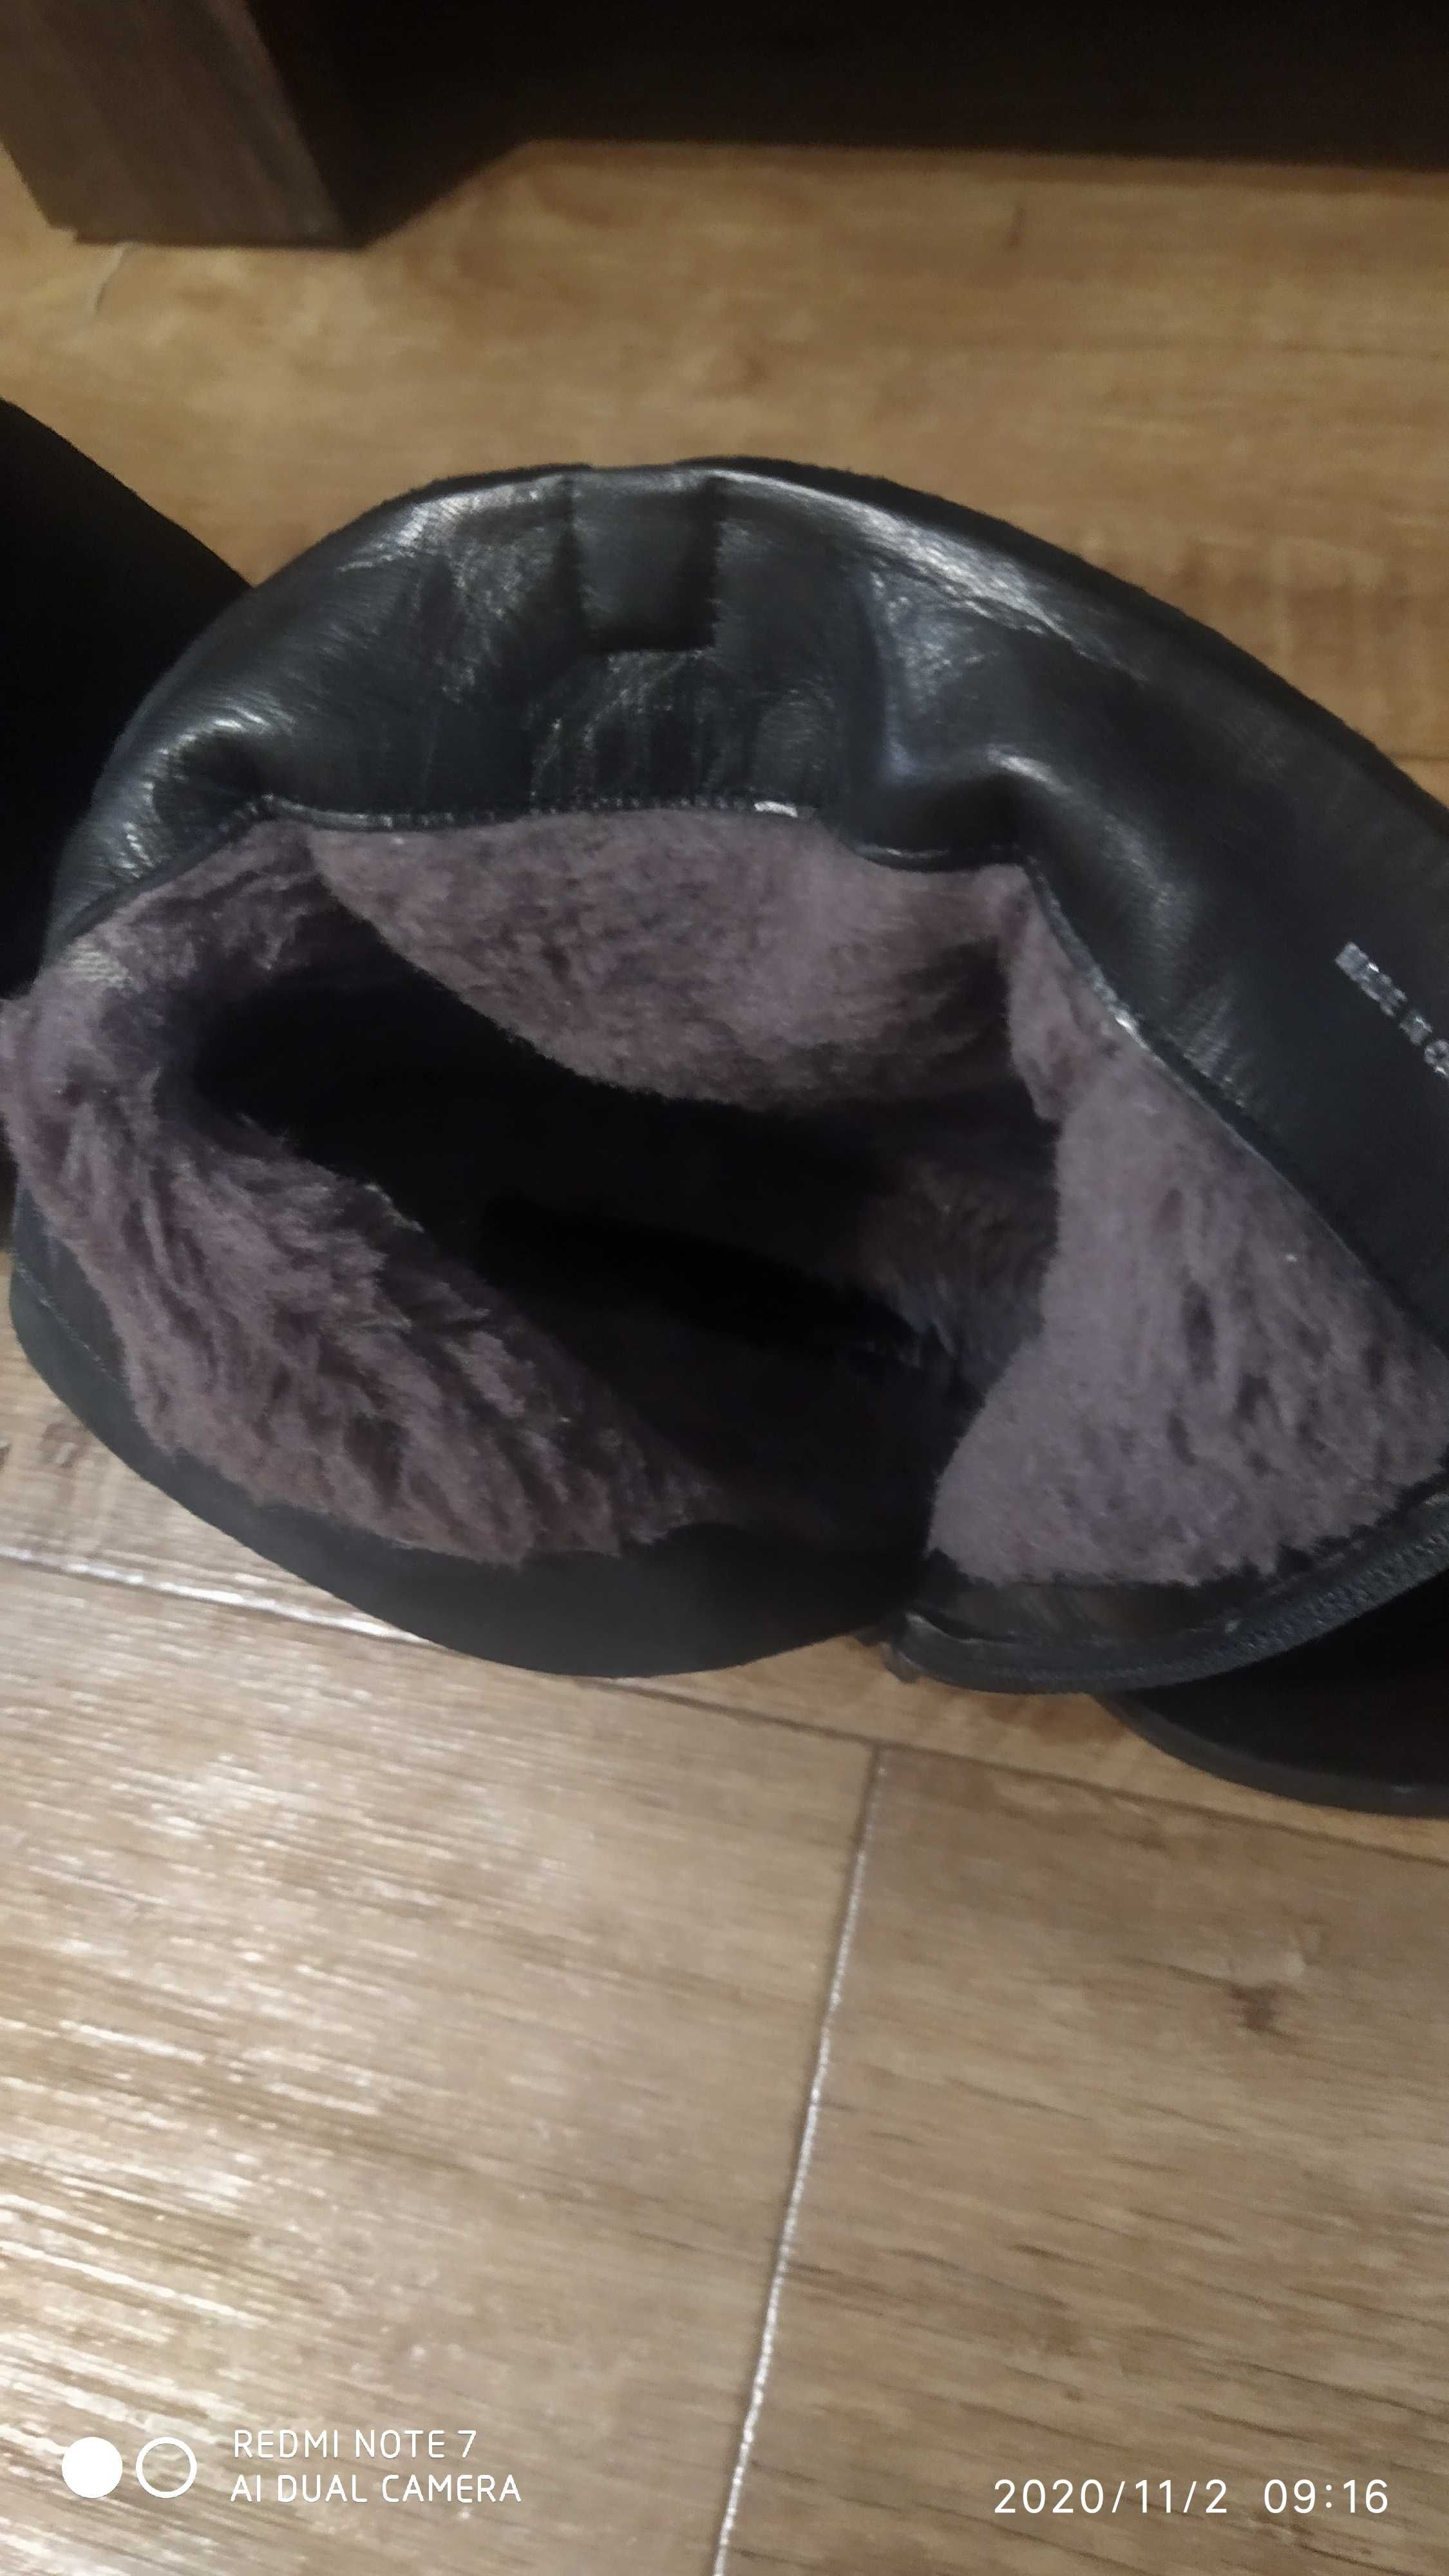 Женские зимние ботинки,сапоги Carlo Pazolini 38 размер